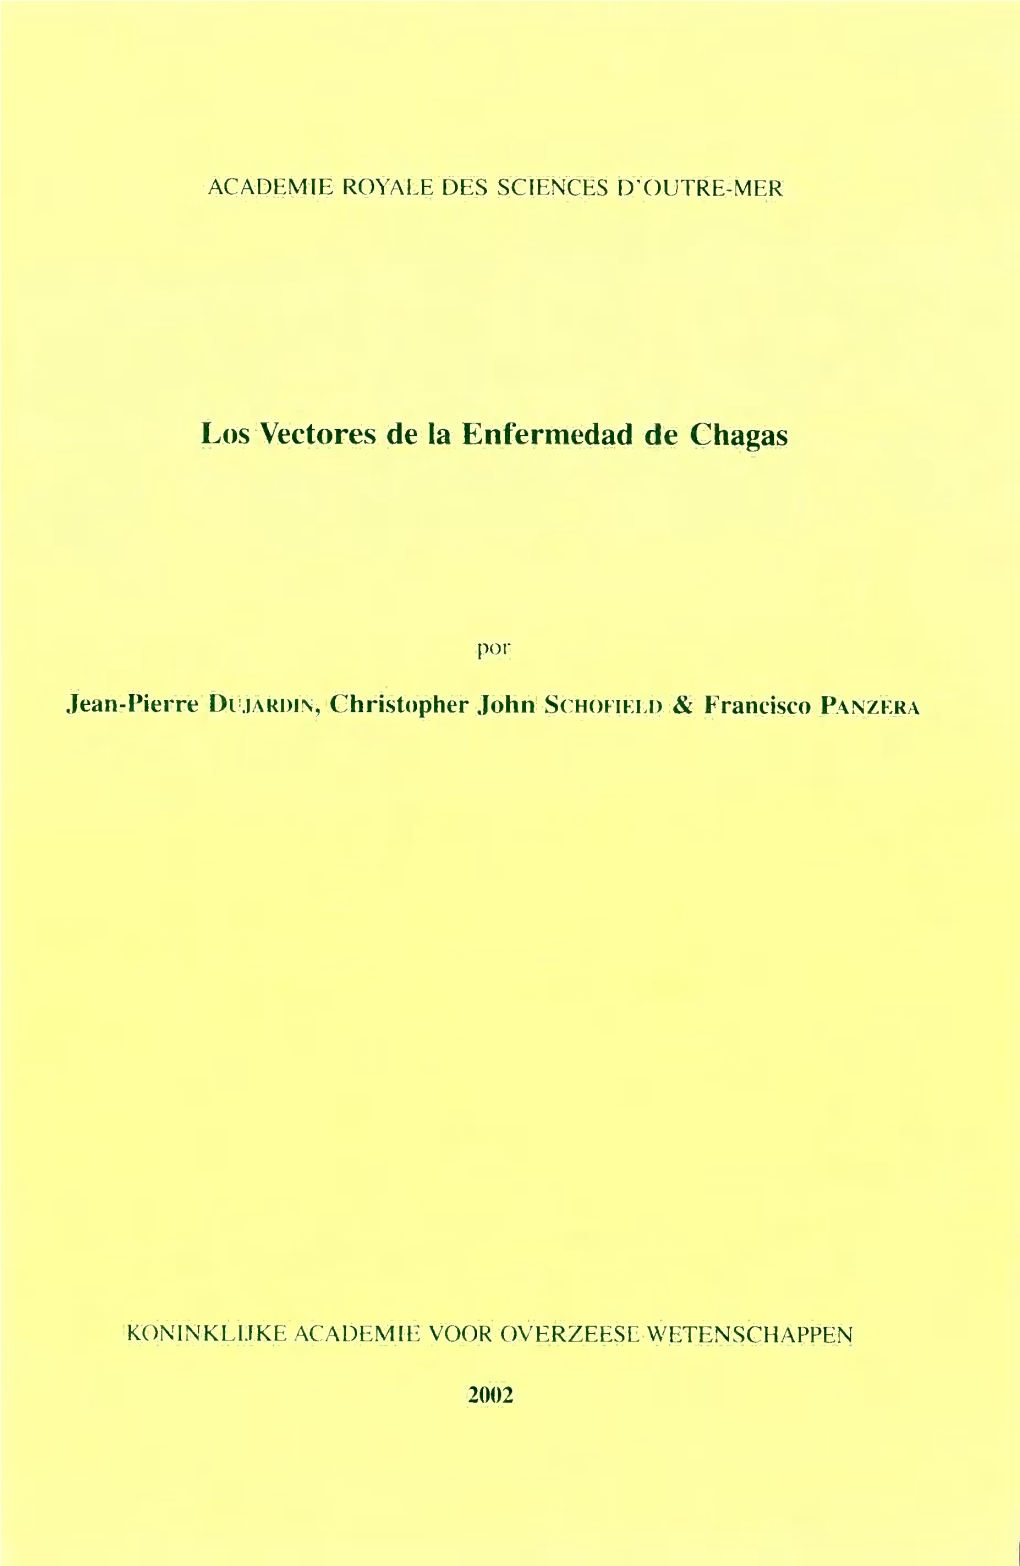 SCHOFIELD, C.J.-PANZERA, F. Los Vectores De La Enfermedad De